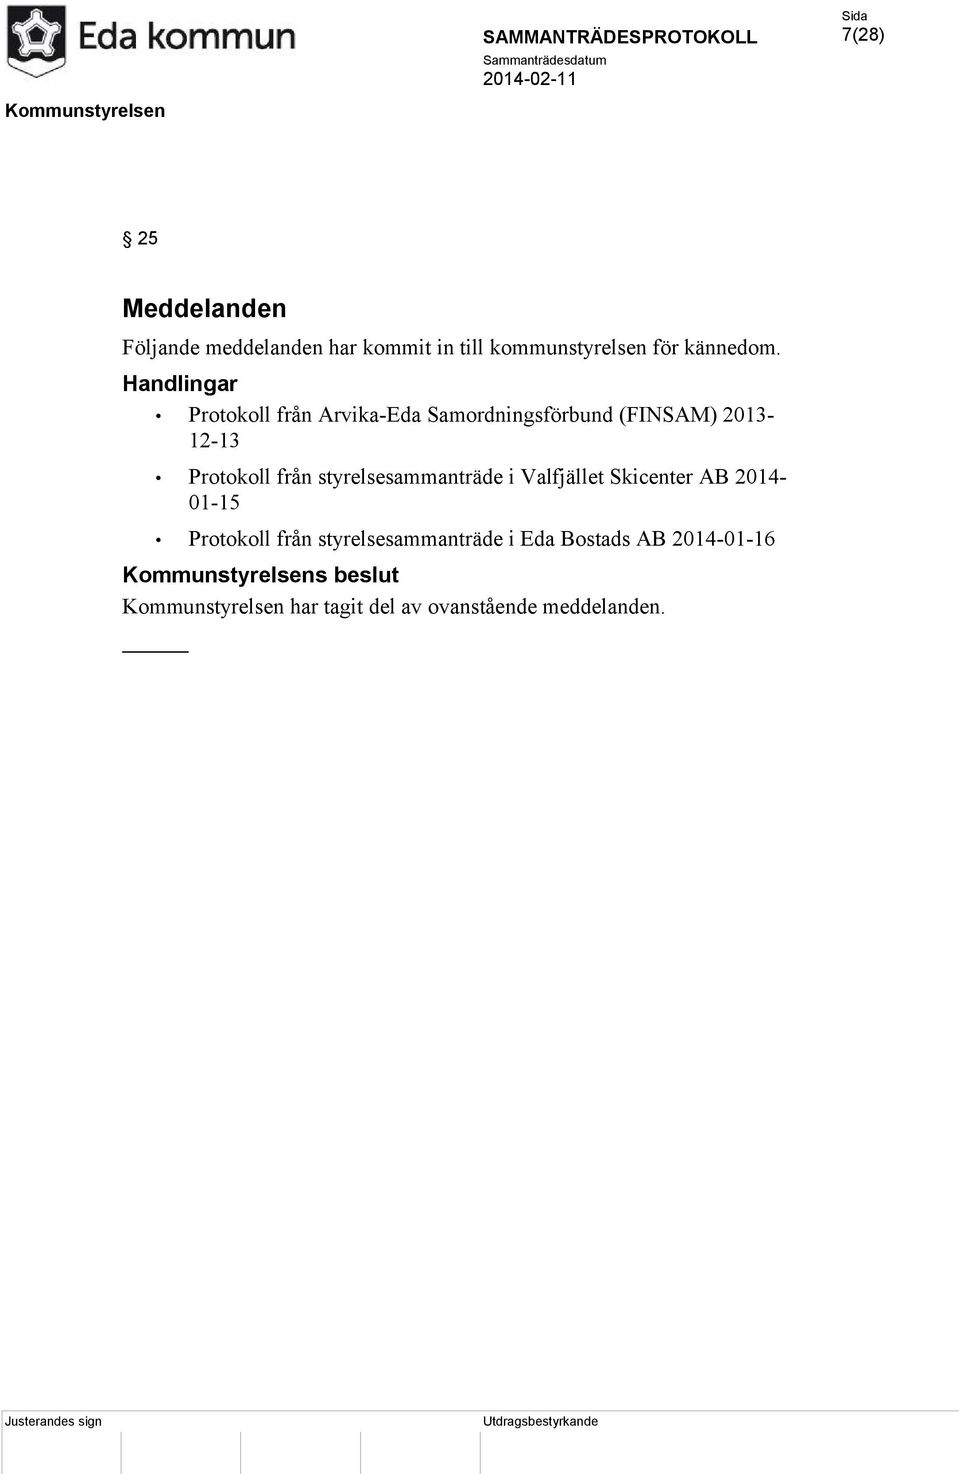 styrelsesammanträde i Valfjället Skicenter AB 2014-01-15 Protokoll från styrelsesammanträde i